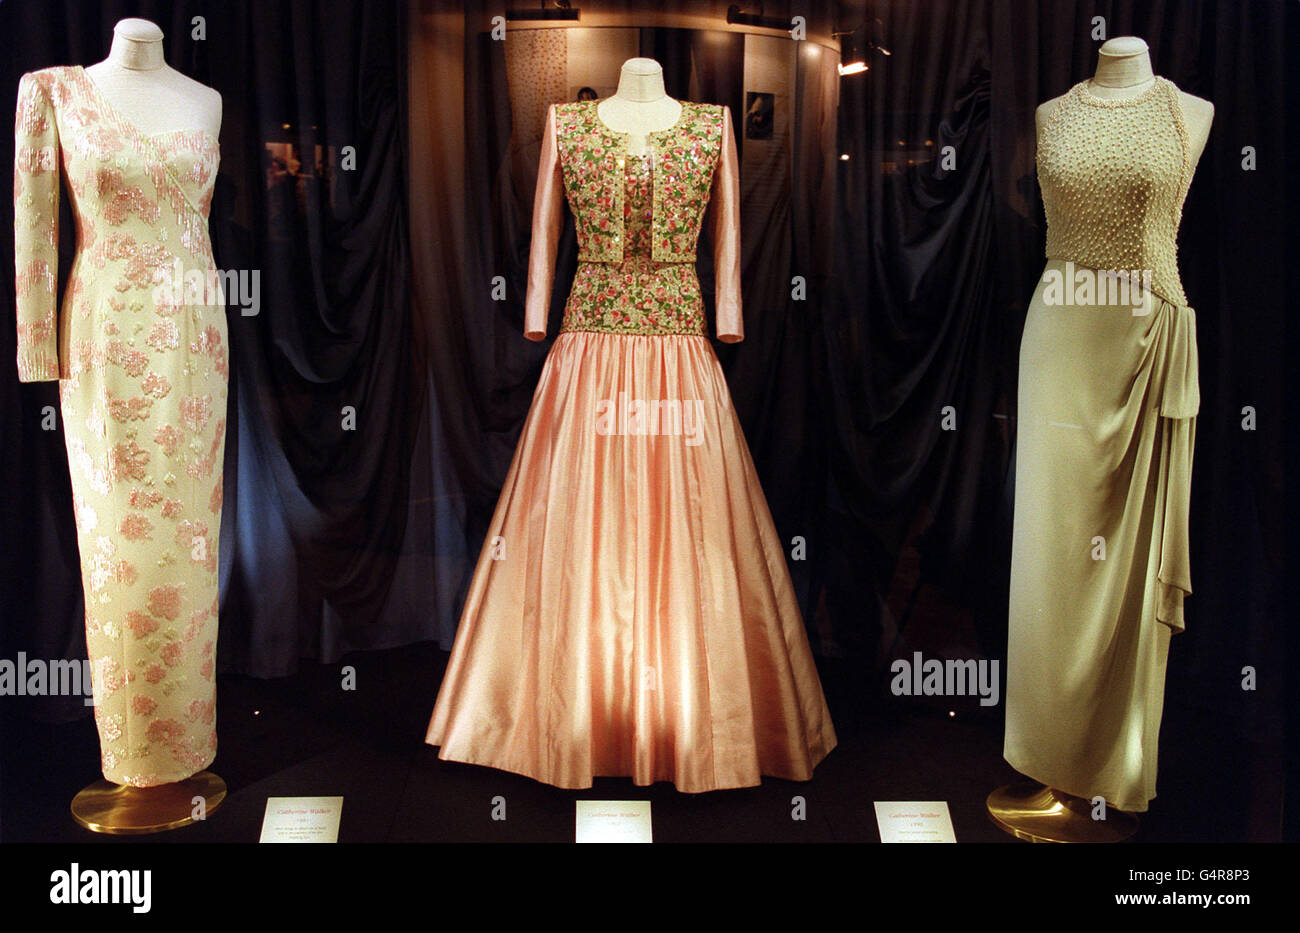 Diana's Kleider: Kleider von Designerin Catherine Walker, getragen von  Diana, Prinzessin von Wales. Die Kleider sind Leihgaben der Stiftung  People's Princess Charitable, gegründet von Maureen Rorech, der sie 1997  bei einer Christie-Auktion